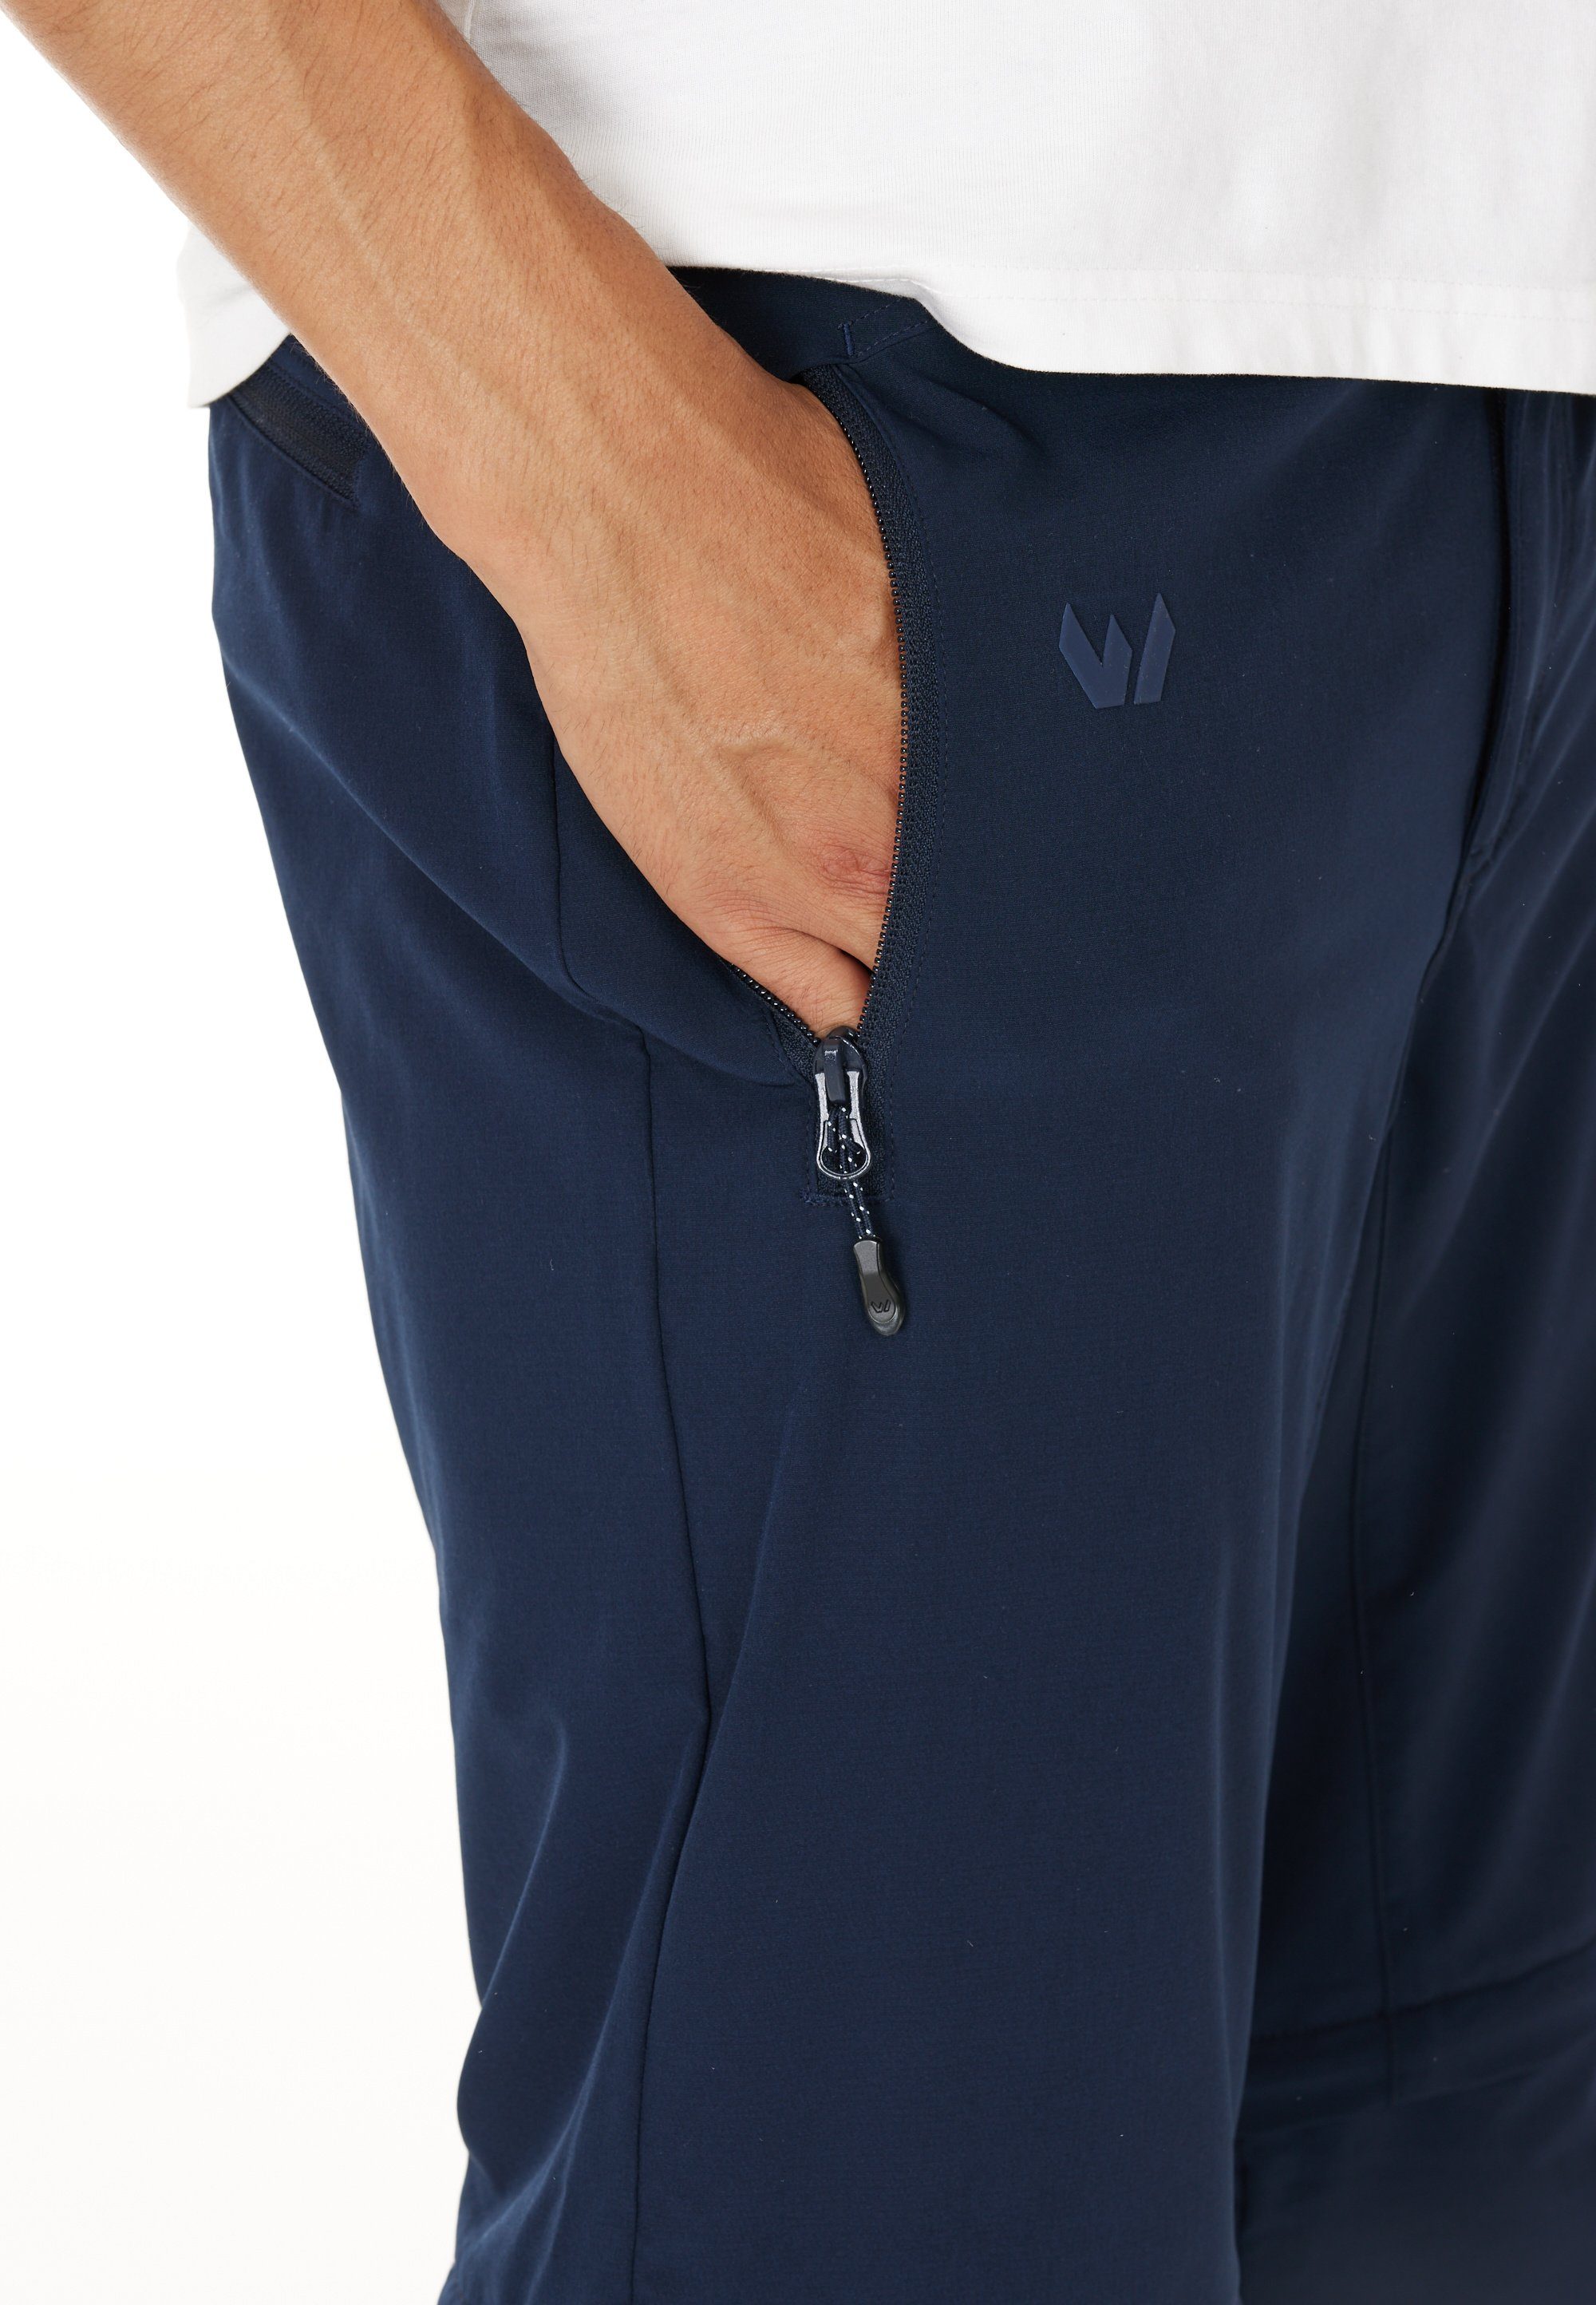 Verwendung dank WHISTLER dunkelblau Outdoorhose Gerdi zur Hose oder Zip-Off-Funktion als Shorts